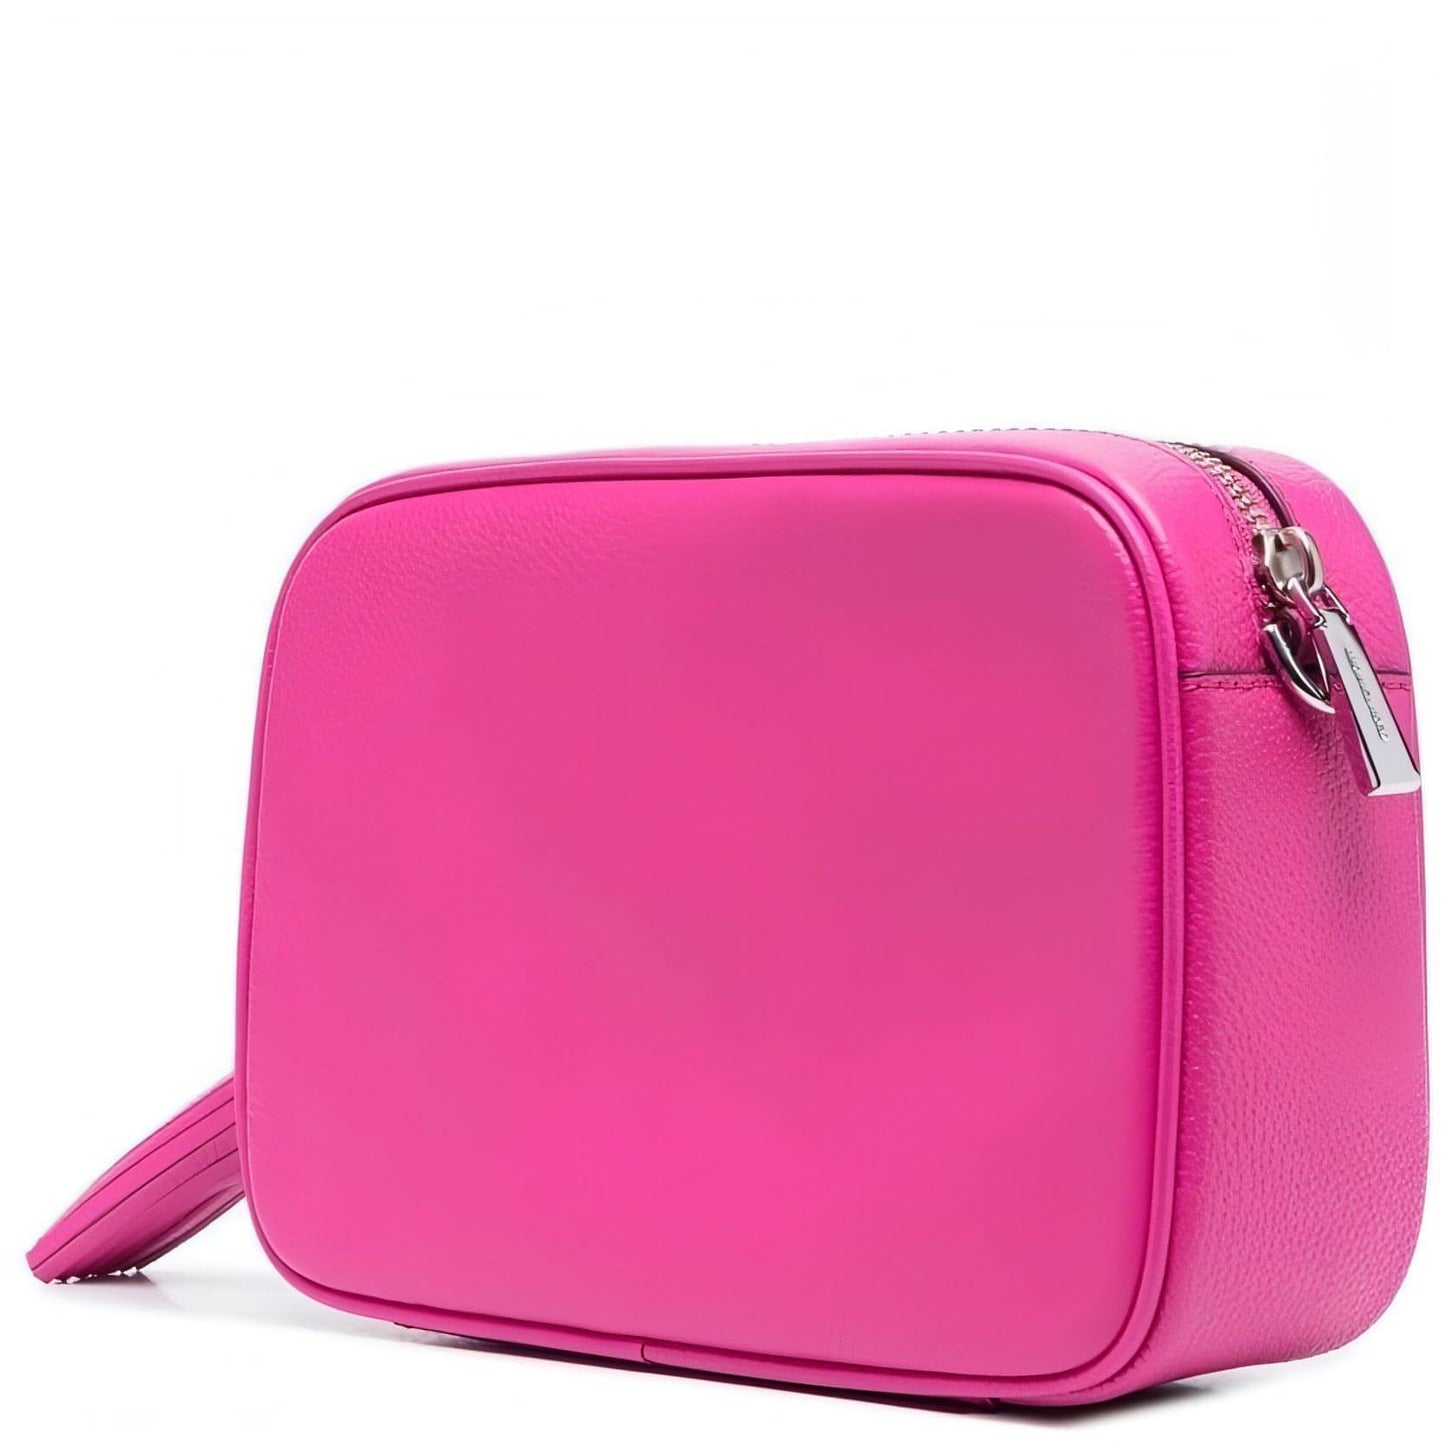 MICHAEL KORS moteriška rožinė rankinė per petį MD camera bag